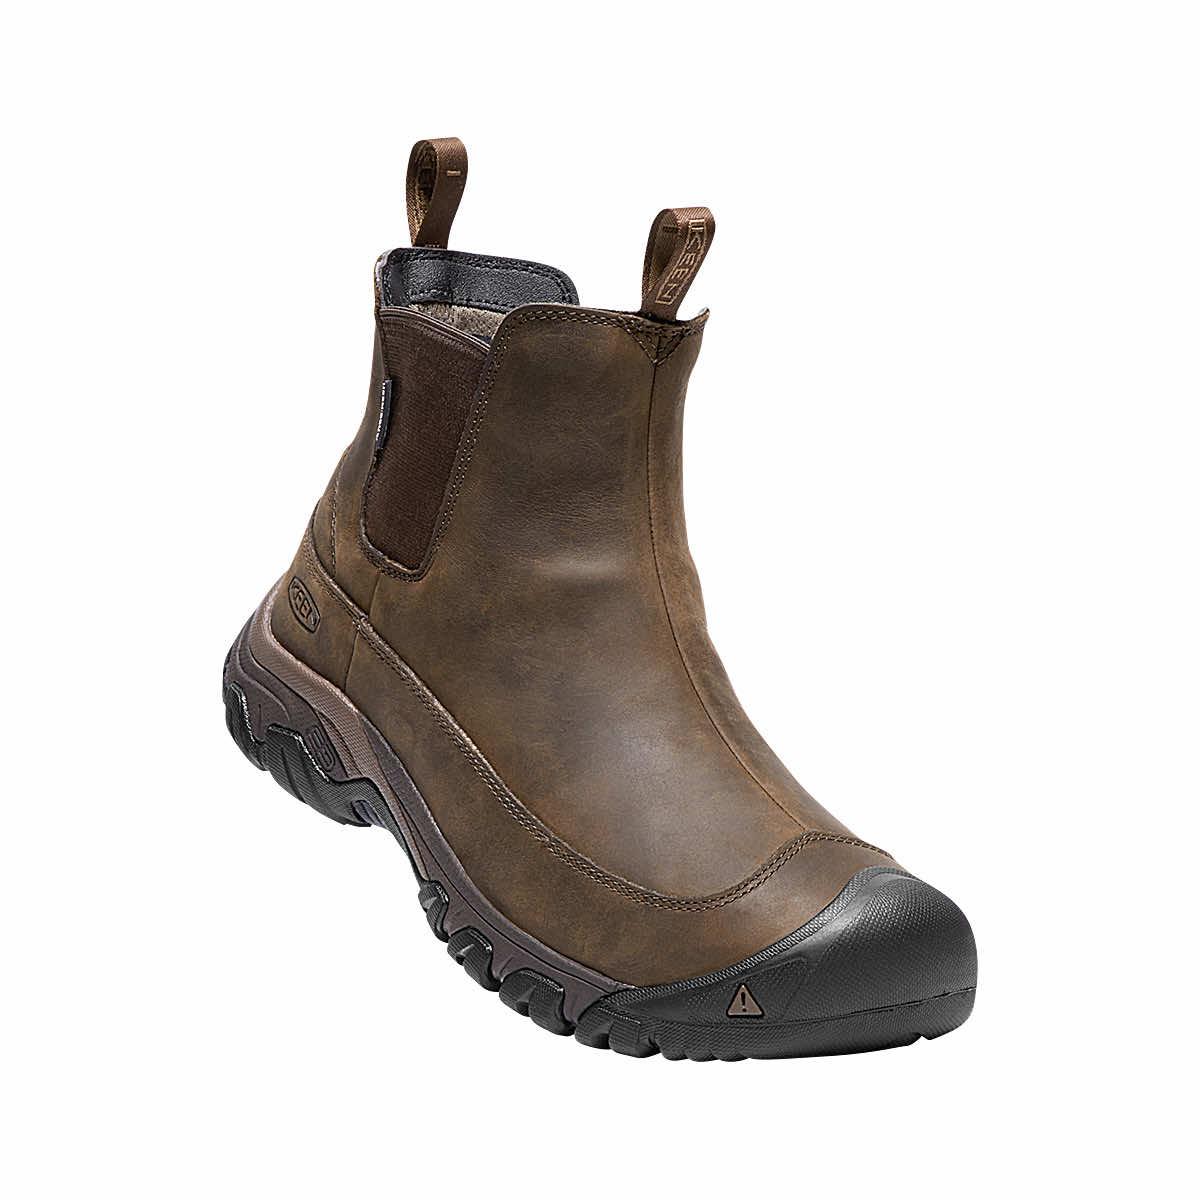  Men's Anchorage Iii Waterproof Boots